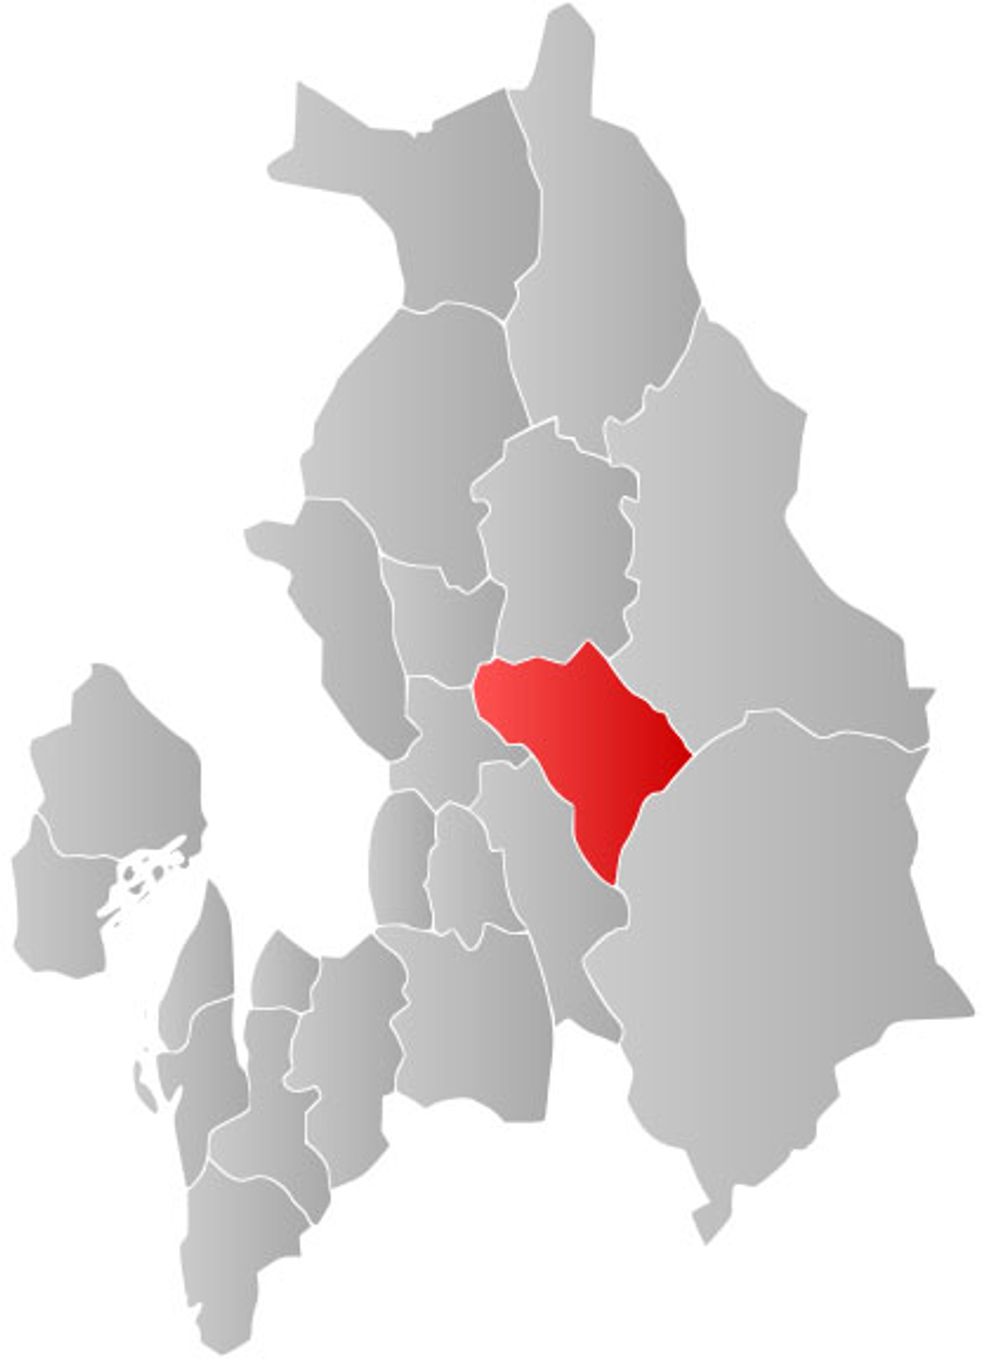 <p>Kartet viser S&oslash;rum kommune i Akershus. Kommunen har cirka 13 500 innbyggere.</p>